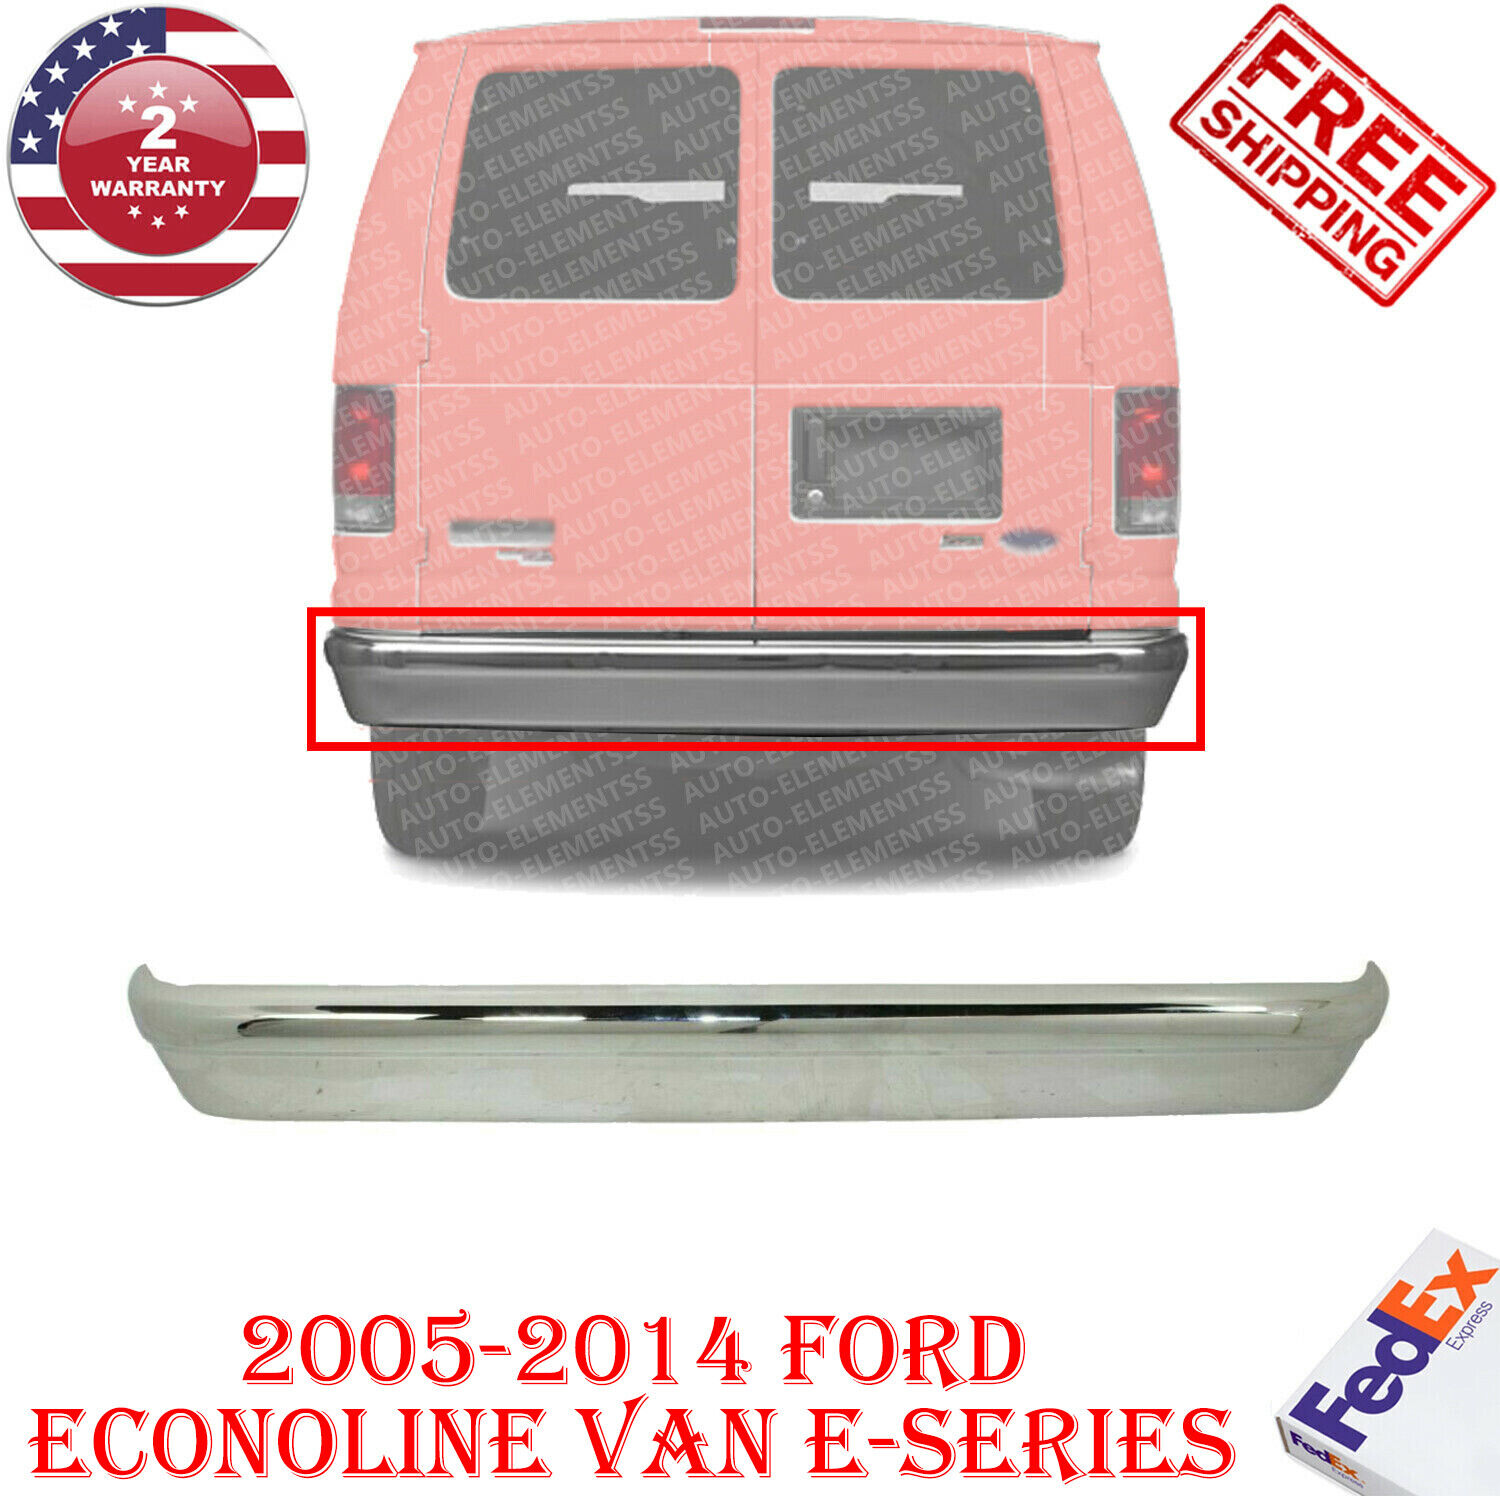 New Rear Chrome Steel Bumper For 2005-2014 Ford Econoline Van E-150 E-250  E-350 643307373349 | eBay